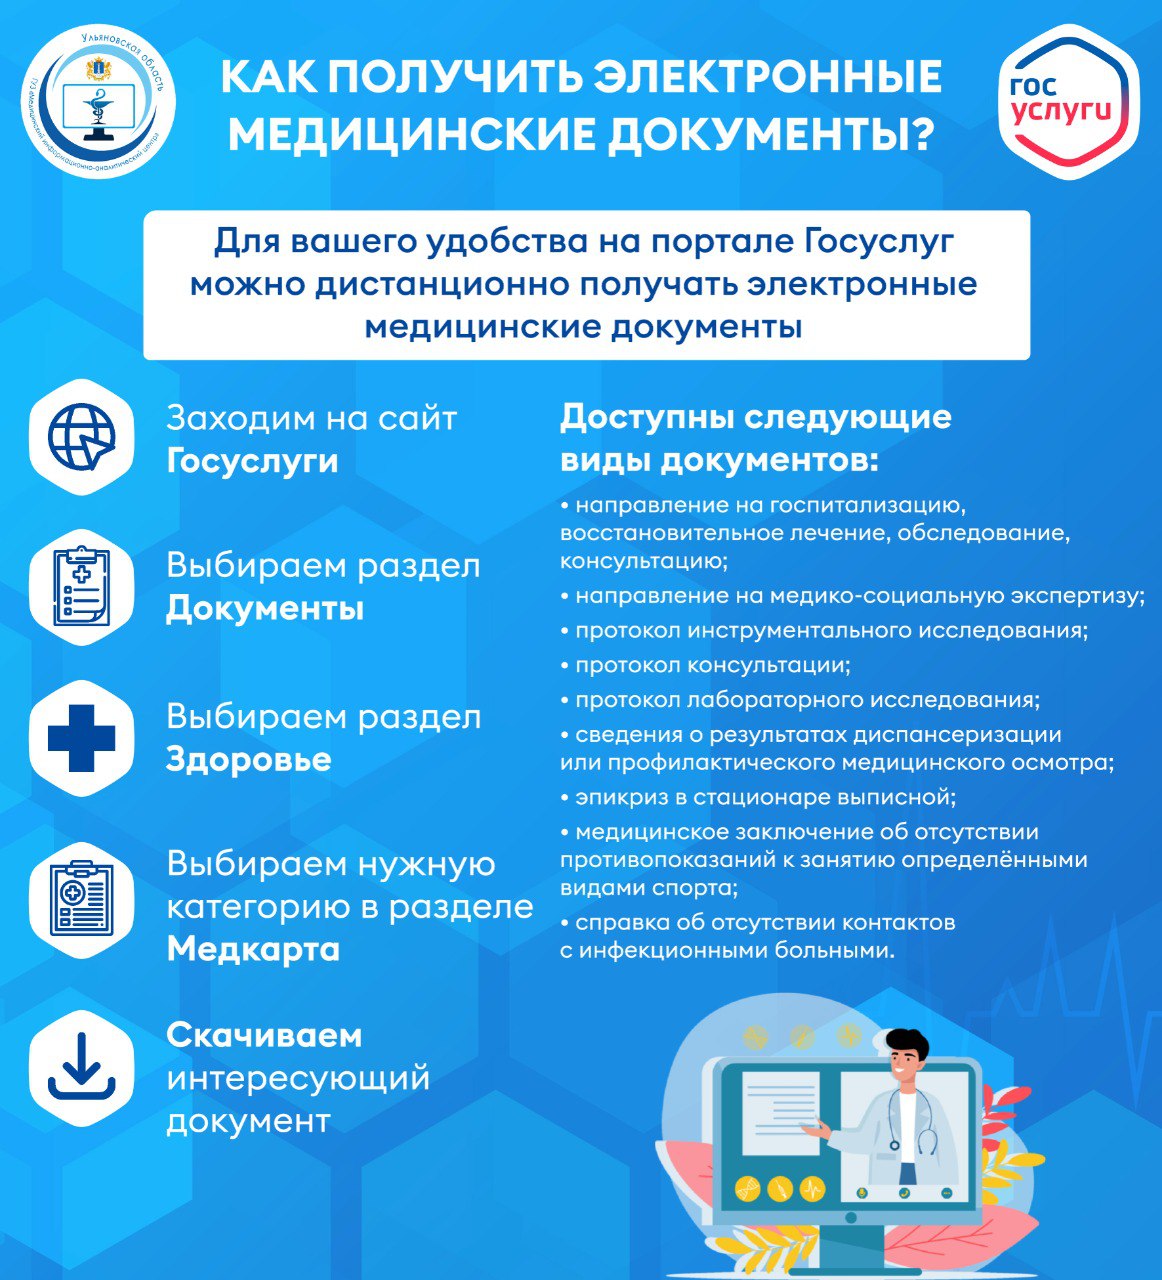 Инструкция «Как получить электронные медицинские документы на Едином портале государственных услуг (функций)».